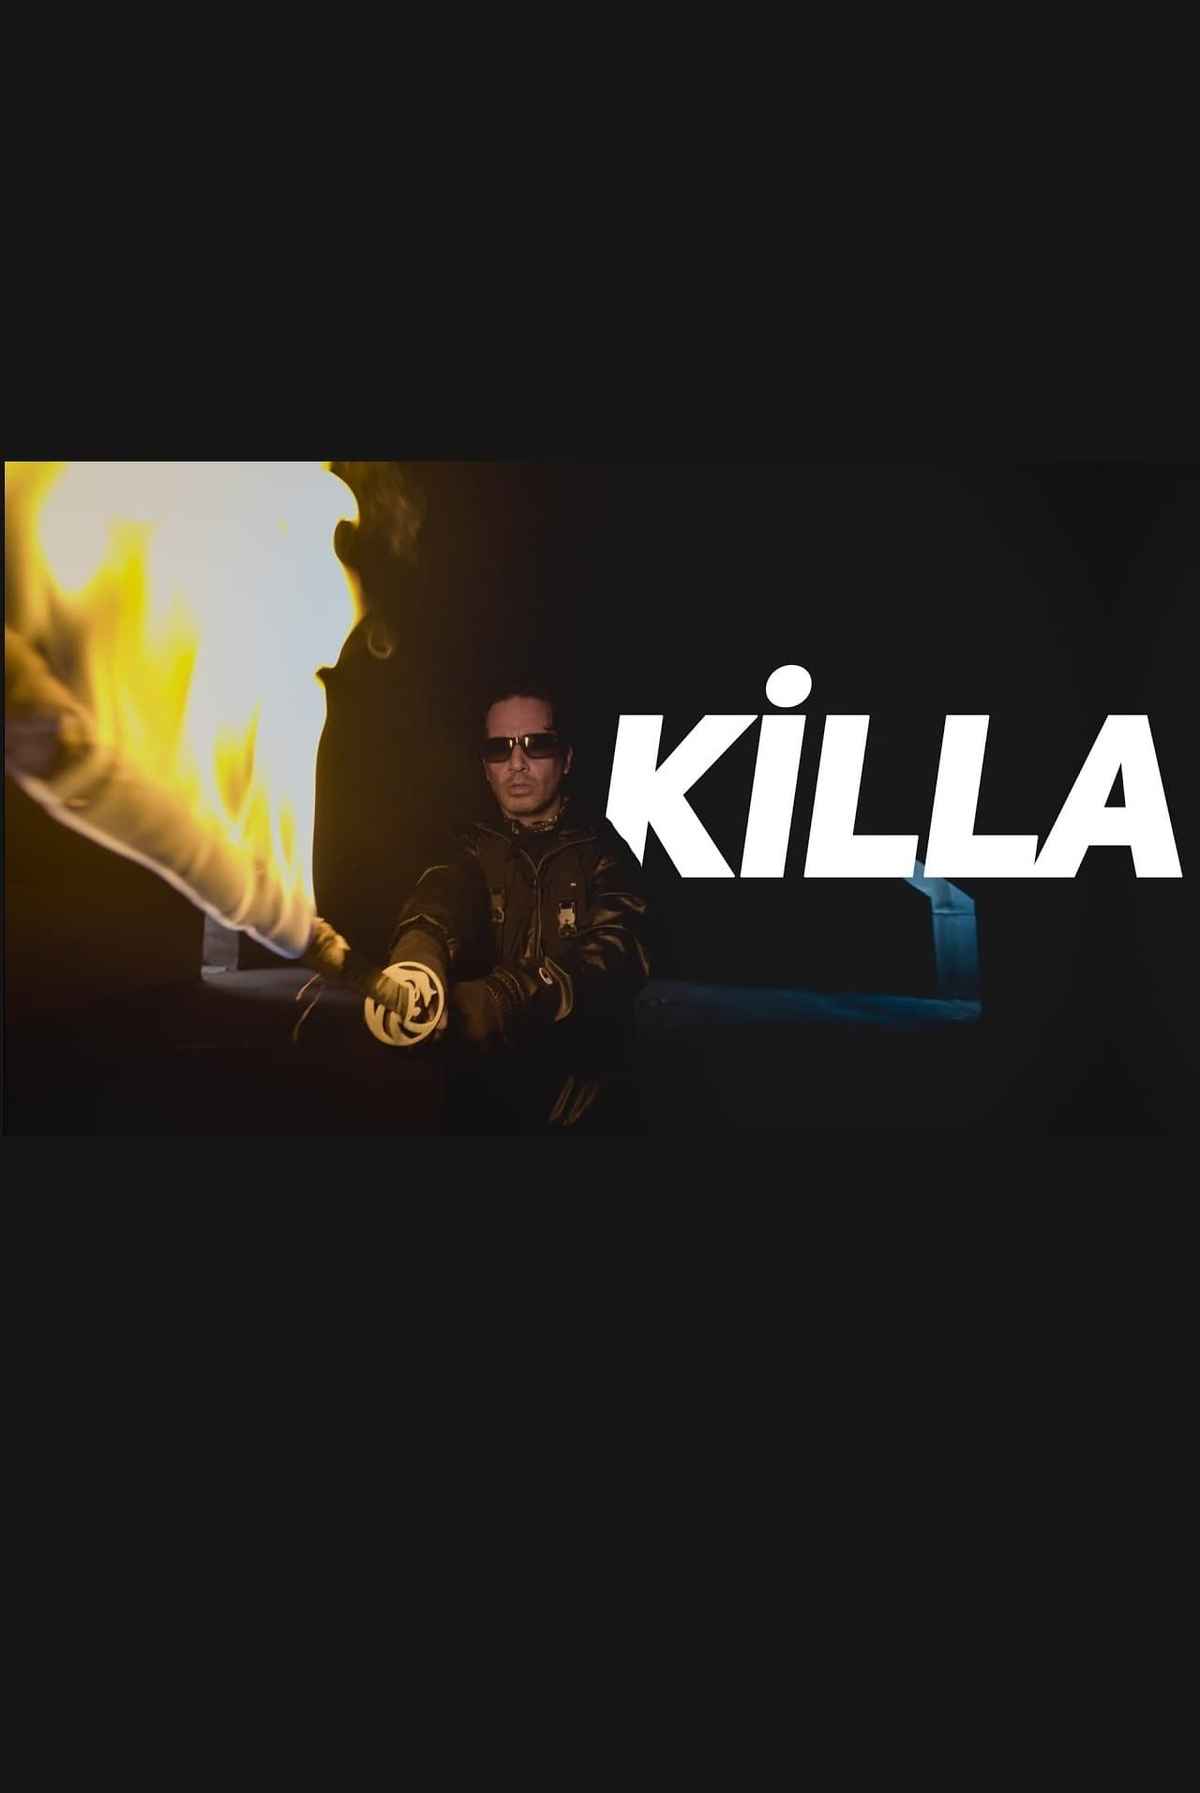 killa season 2 movie trailer